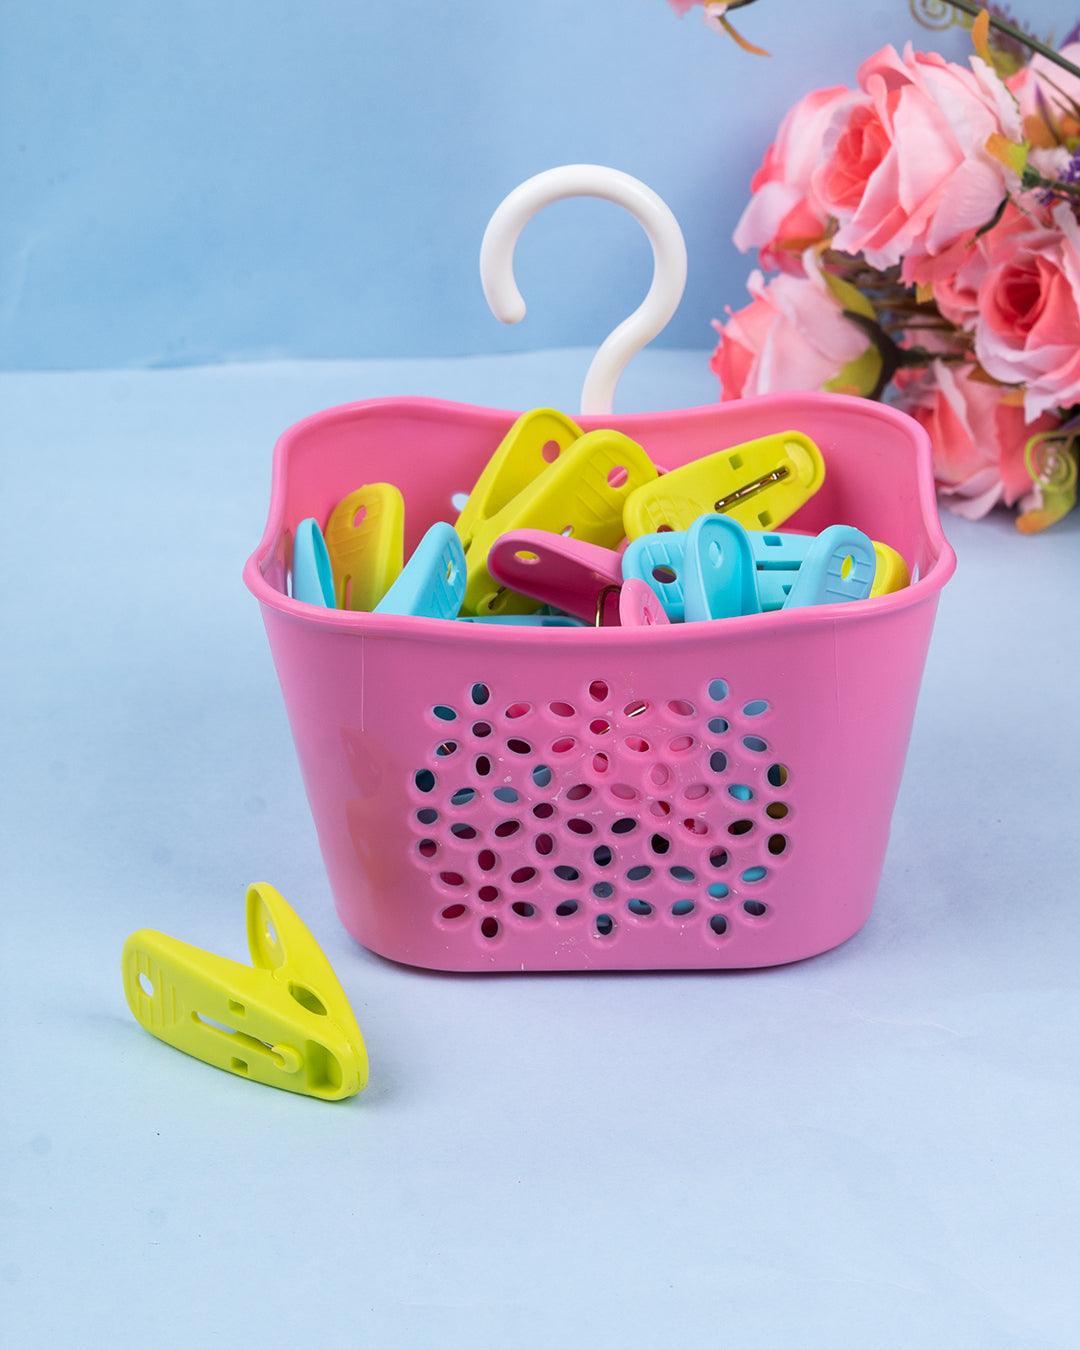 Cloth Clips with Basket Set, 24 Clips & Basket, Pink, Plastic - MARKET 99